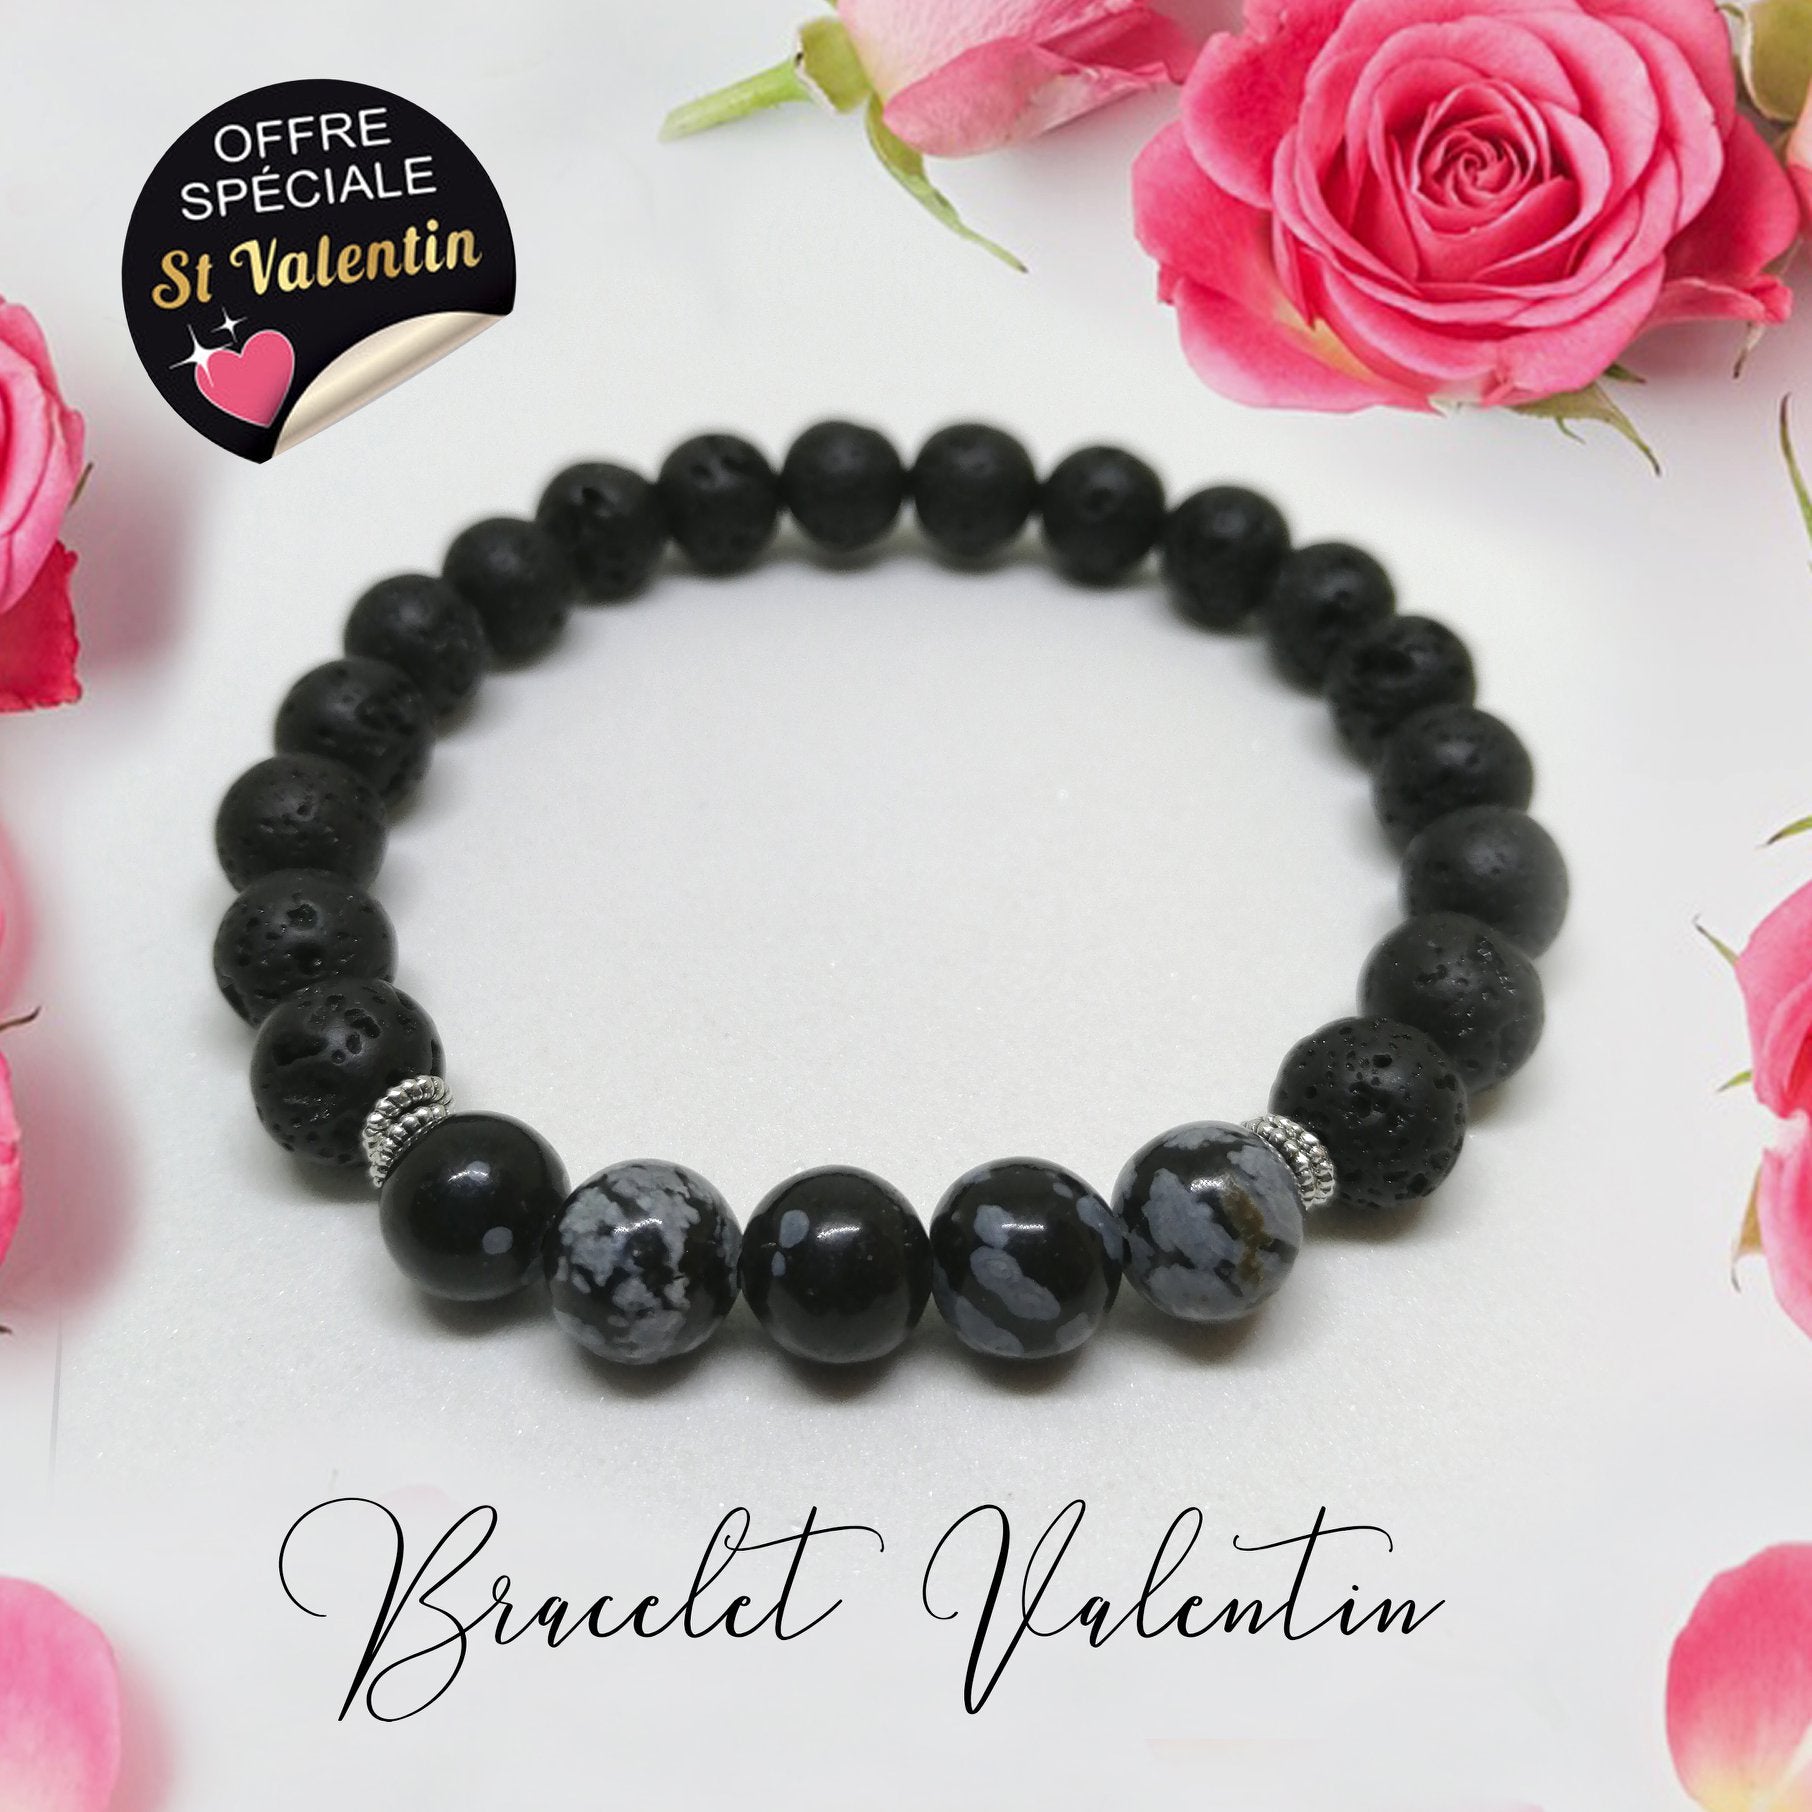 Bracelets Valentin et Valentine - Ozanao